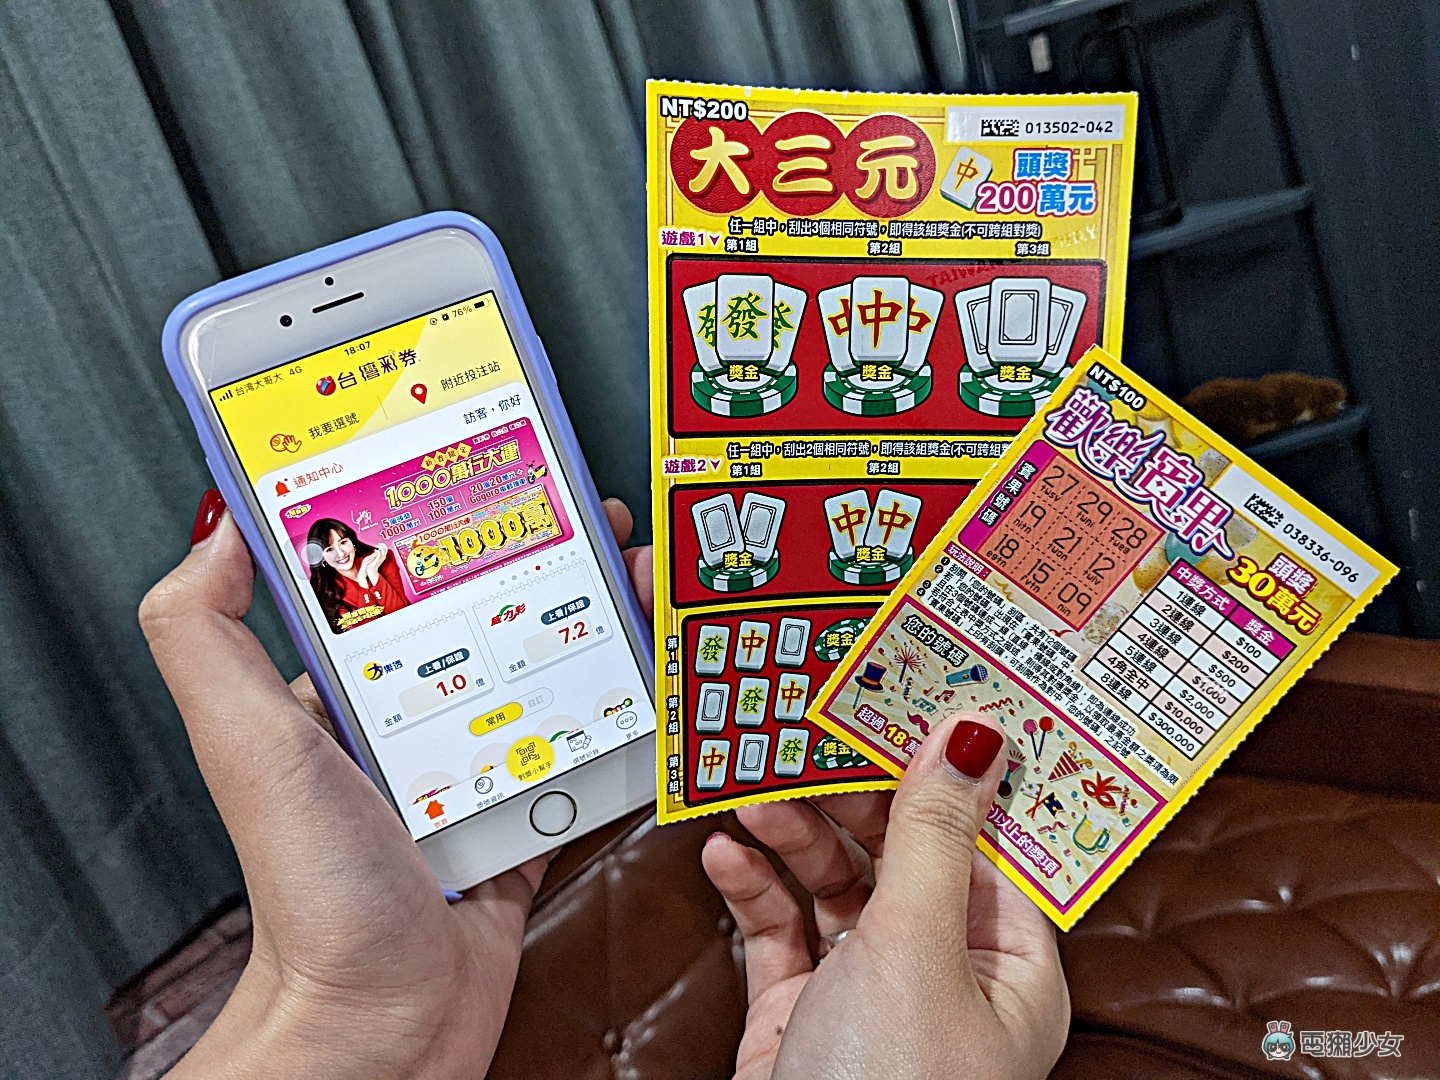 台灣彩券 App 悄悄新增『 對獎神器 』功能，一秒知道你中多少錢！iOS/Android 都適用！